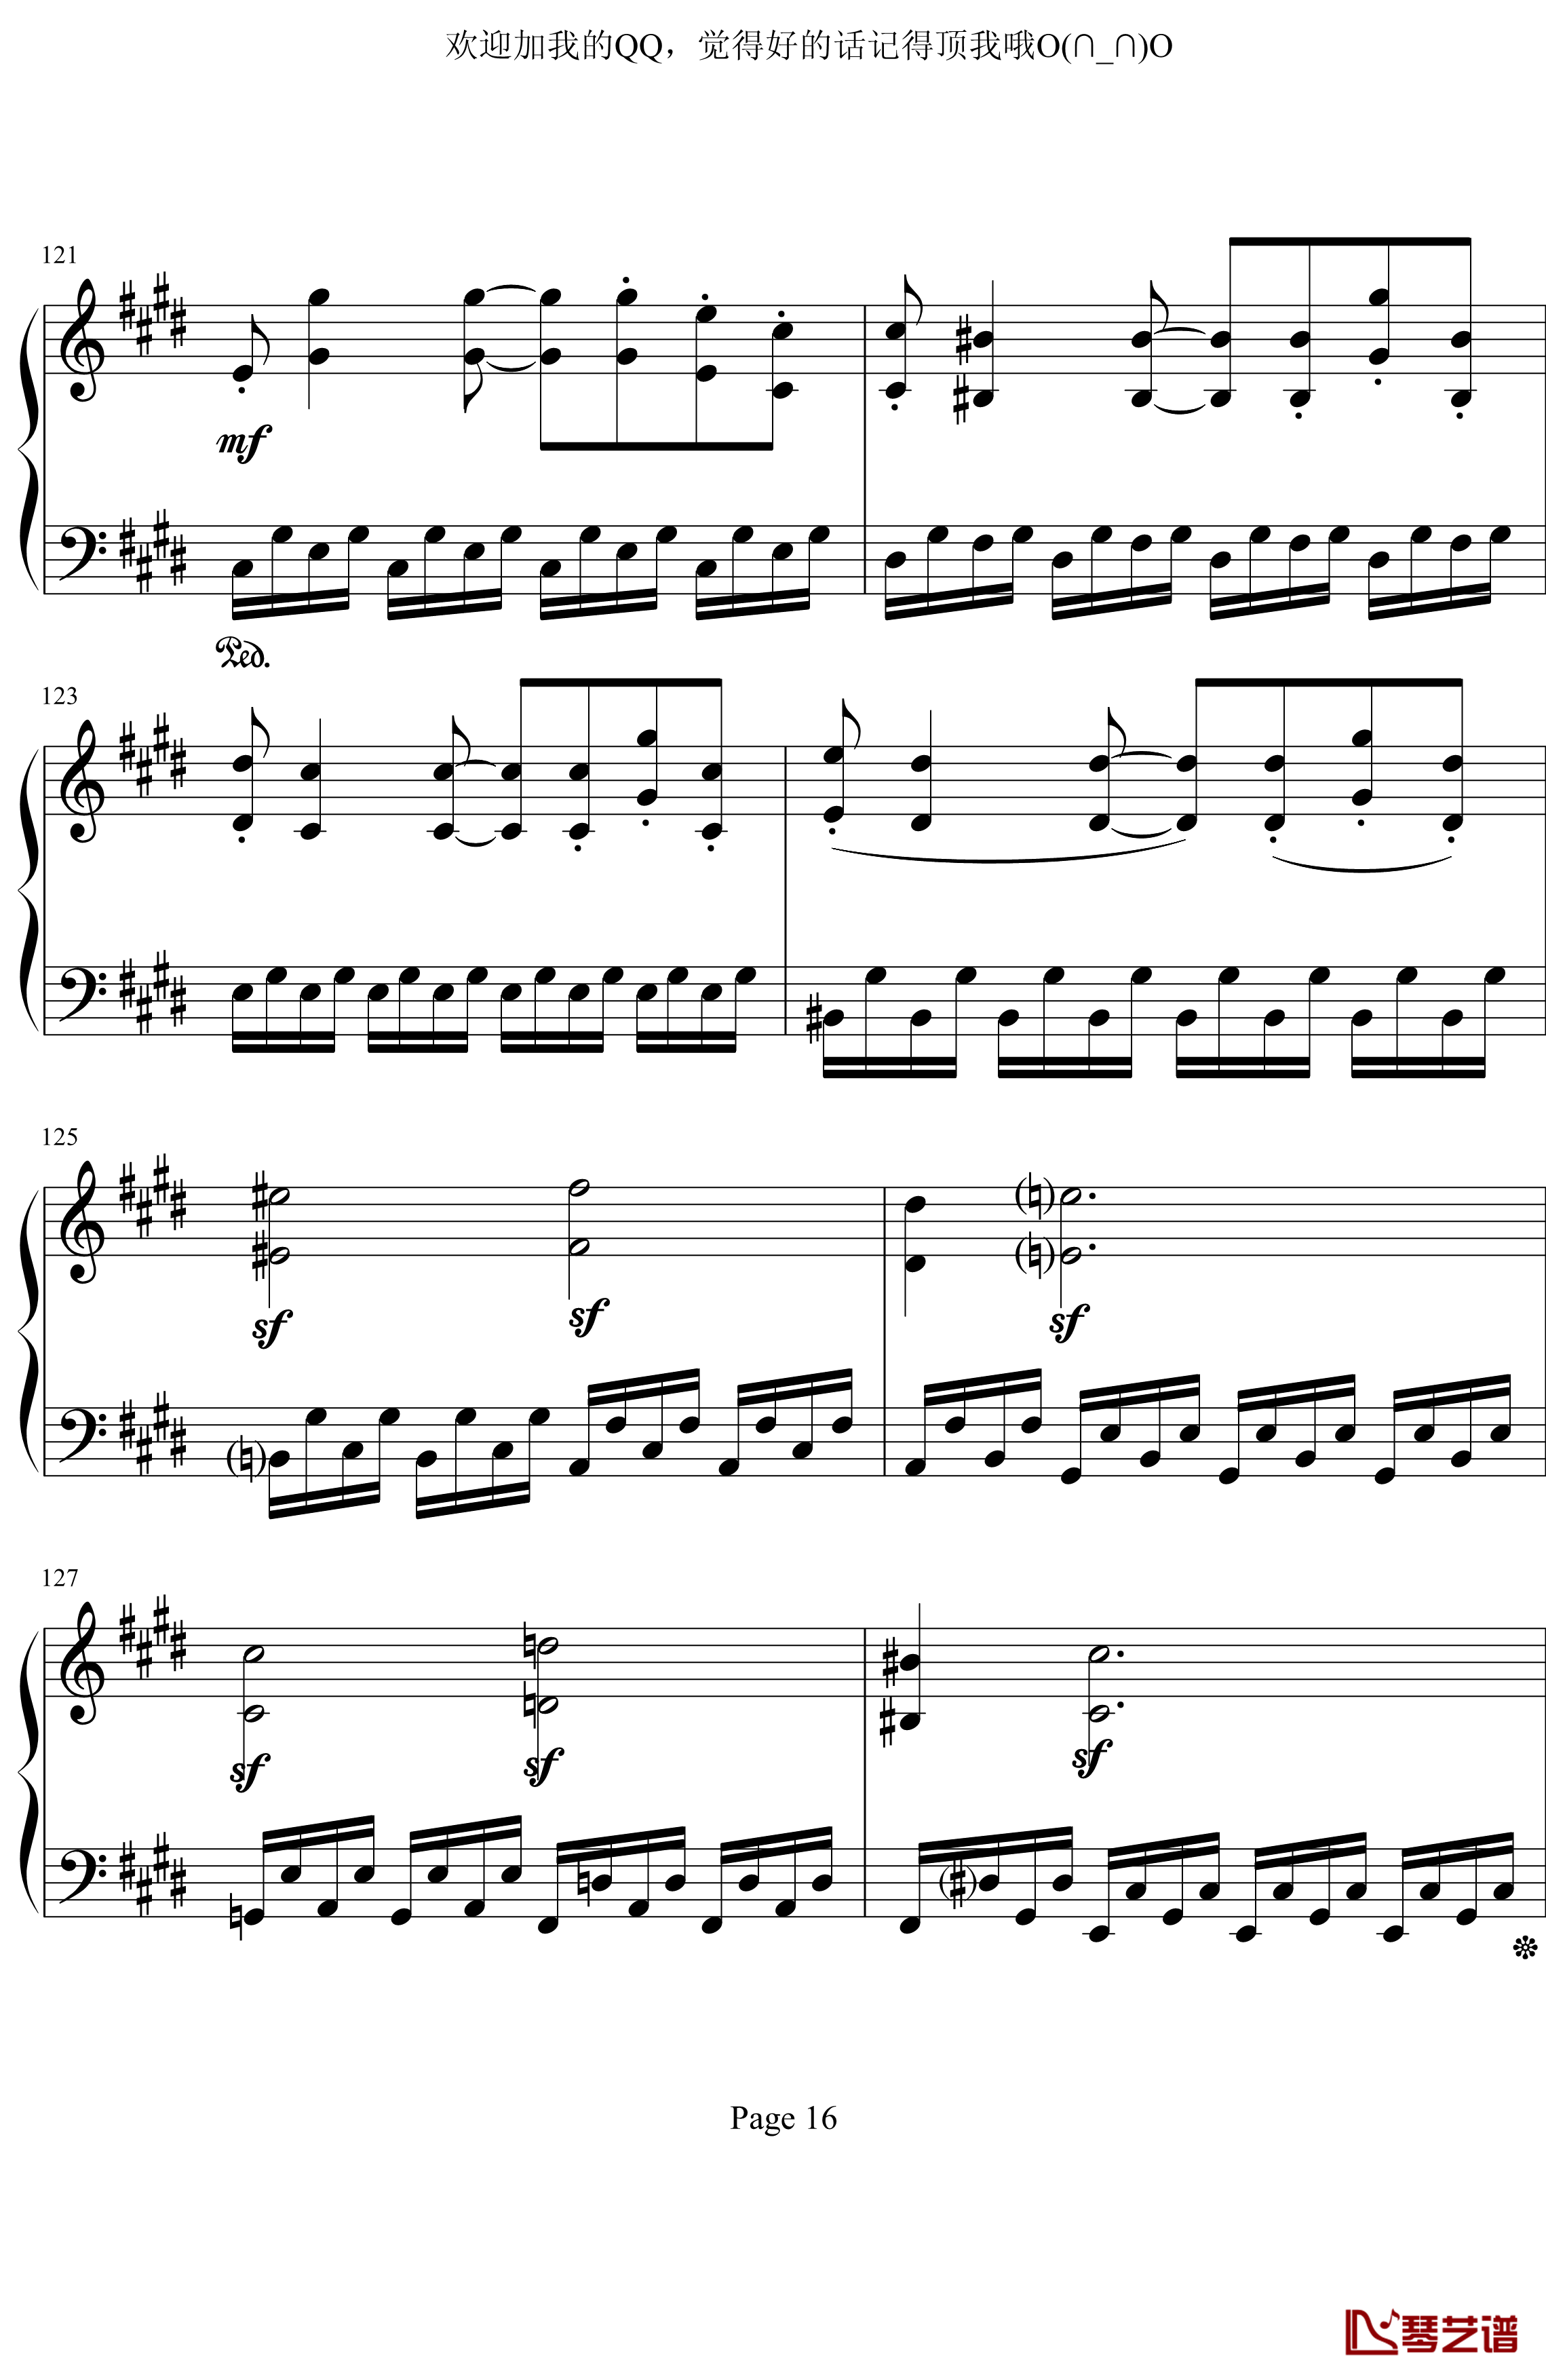 月光奏鸣曲第三乐章钢琴谱-贝多芬-beethoven16